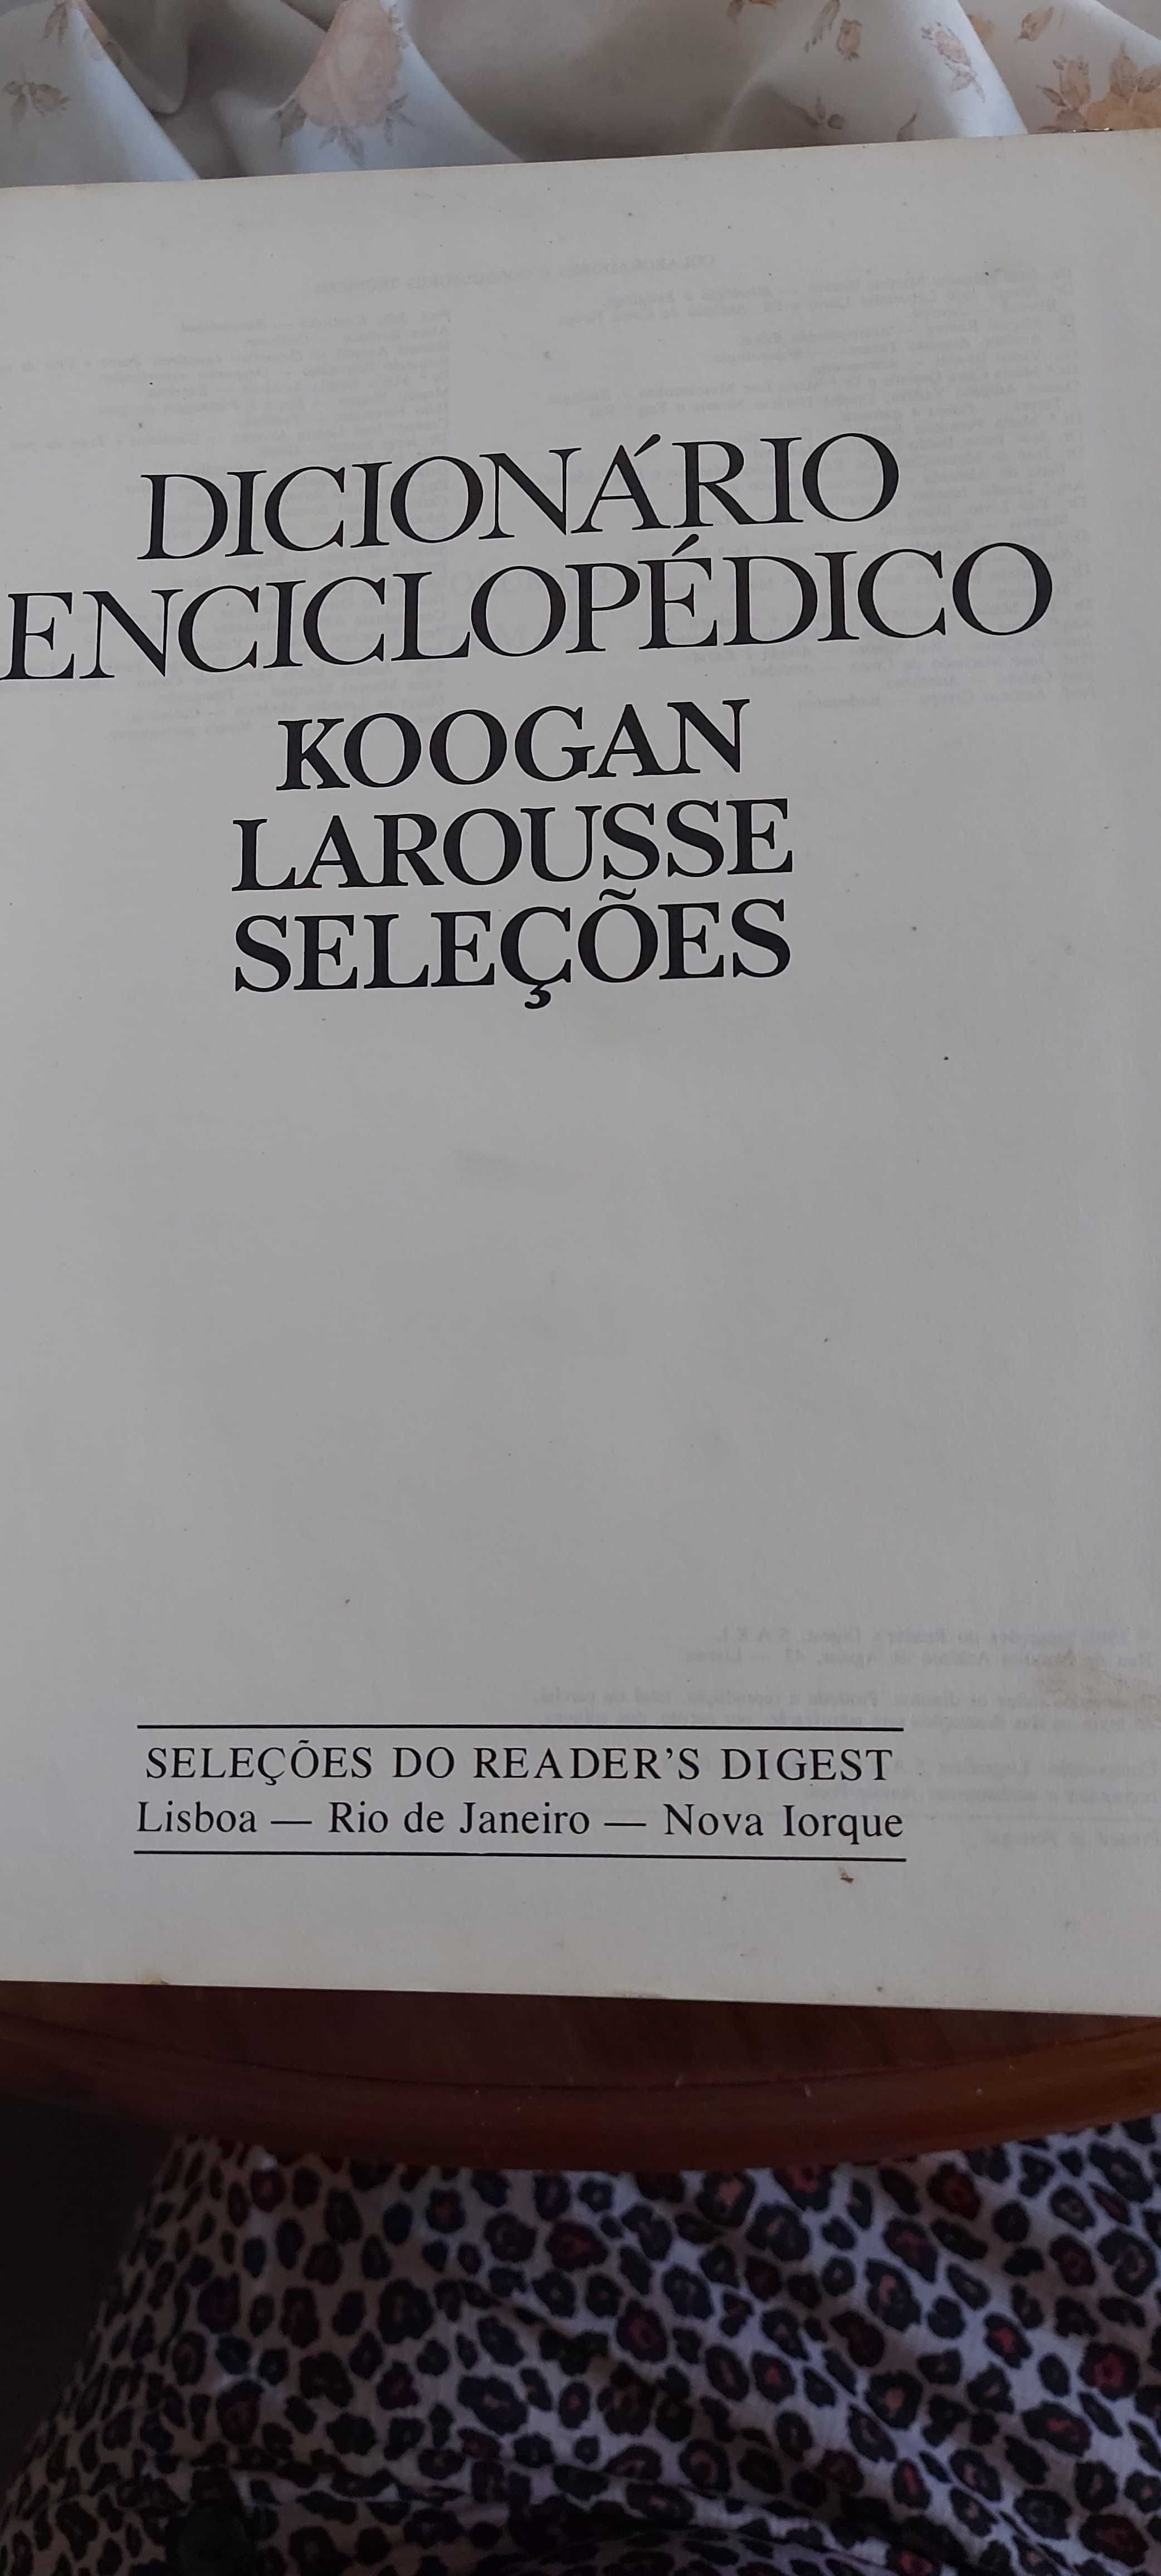 Dicionário Enciclopédico - Koogan Larousse Seleções - KLS